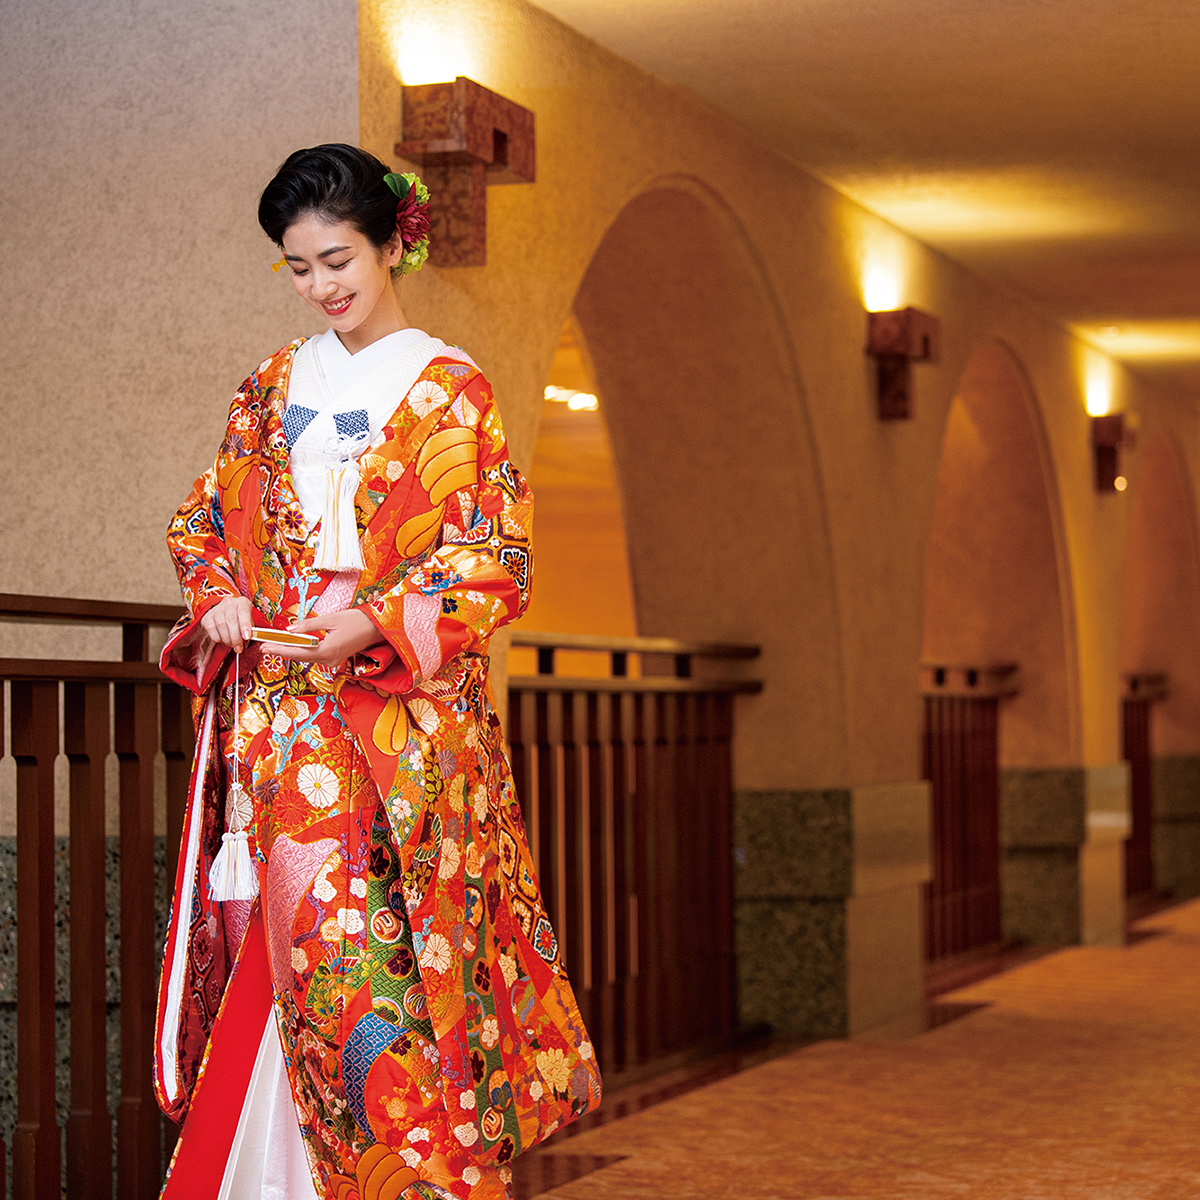 ホテルオークラ京都ブライダル 公式インスタグラム【hotelokurakyoto_bridal】新着情報イメージ2